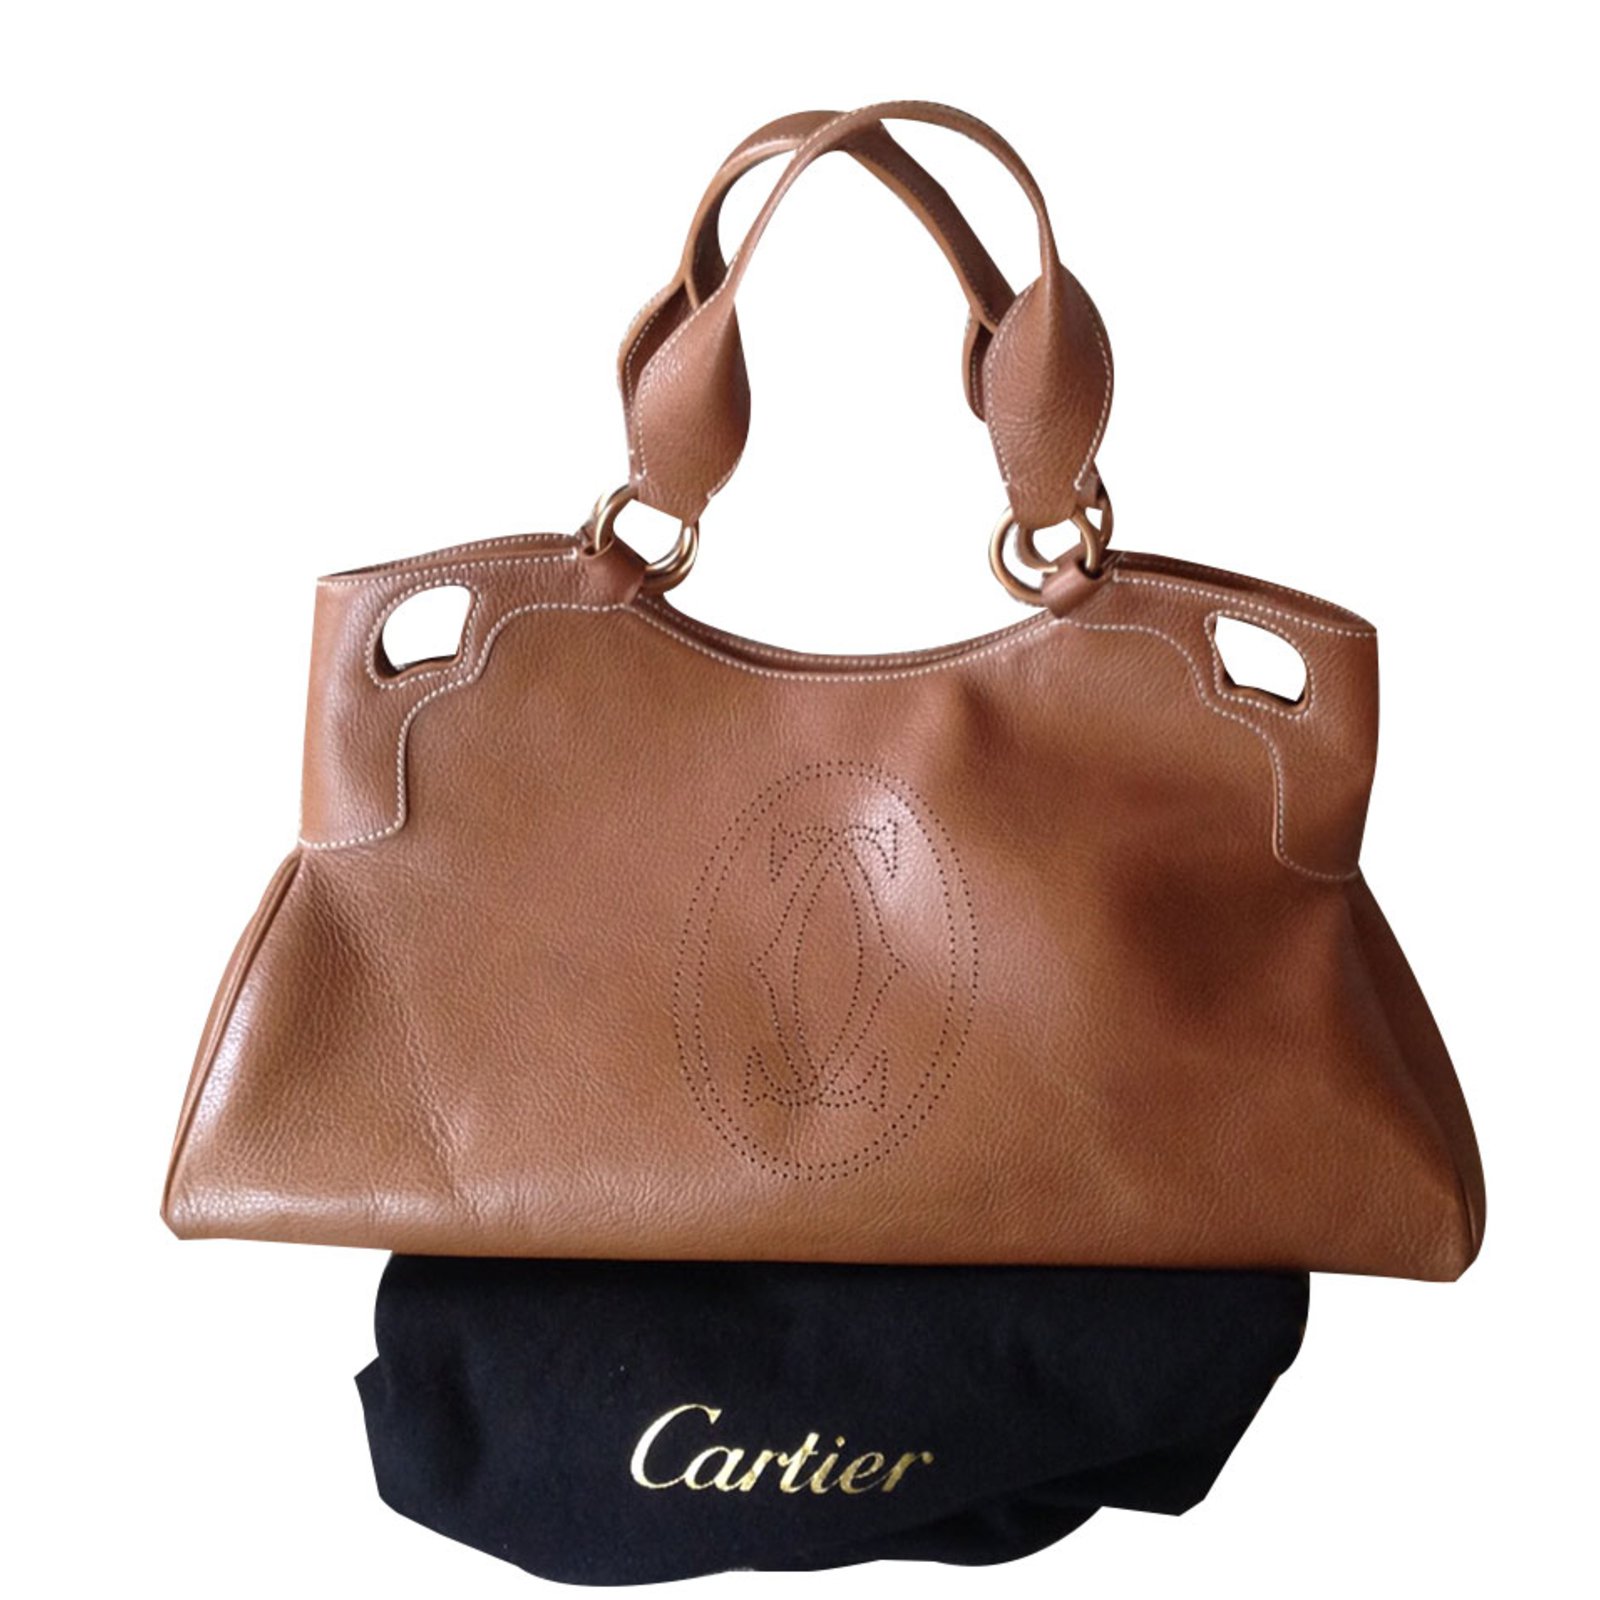 Cartier Marcello Handbags Leather 